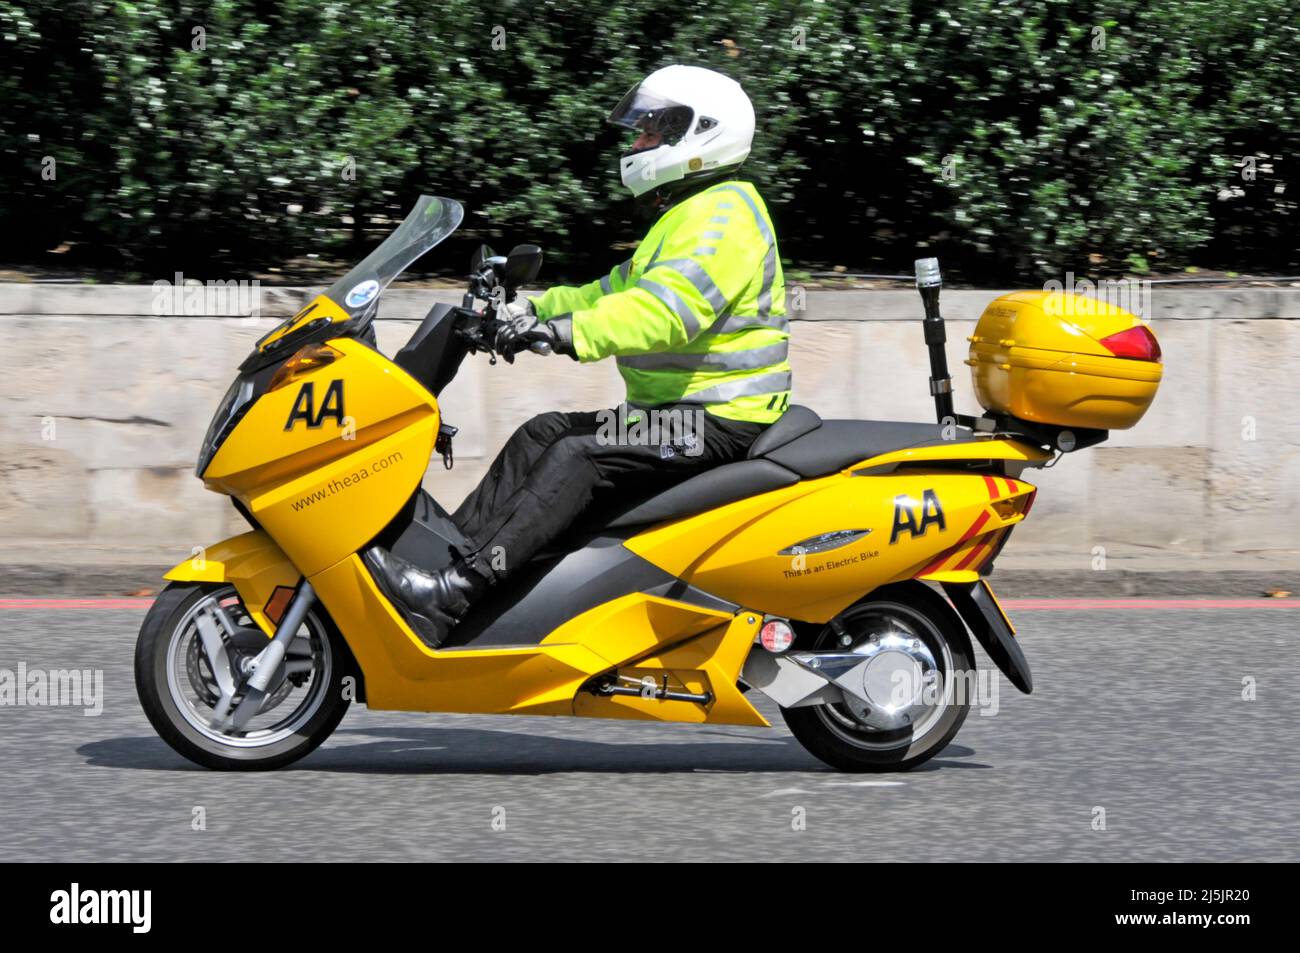 Vista laterale AA pattolman giacca ad alta visibilità in moto scooter elettrico giallo dare ai membri assistenza stradale in congestionate London Streets Inghilterra UK Foto Stock